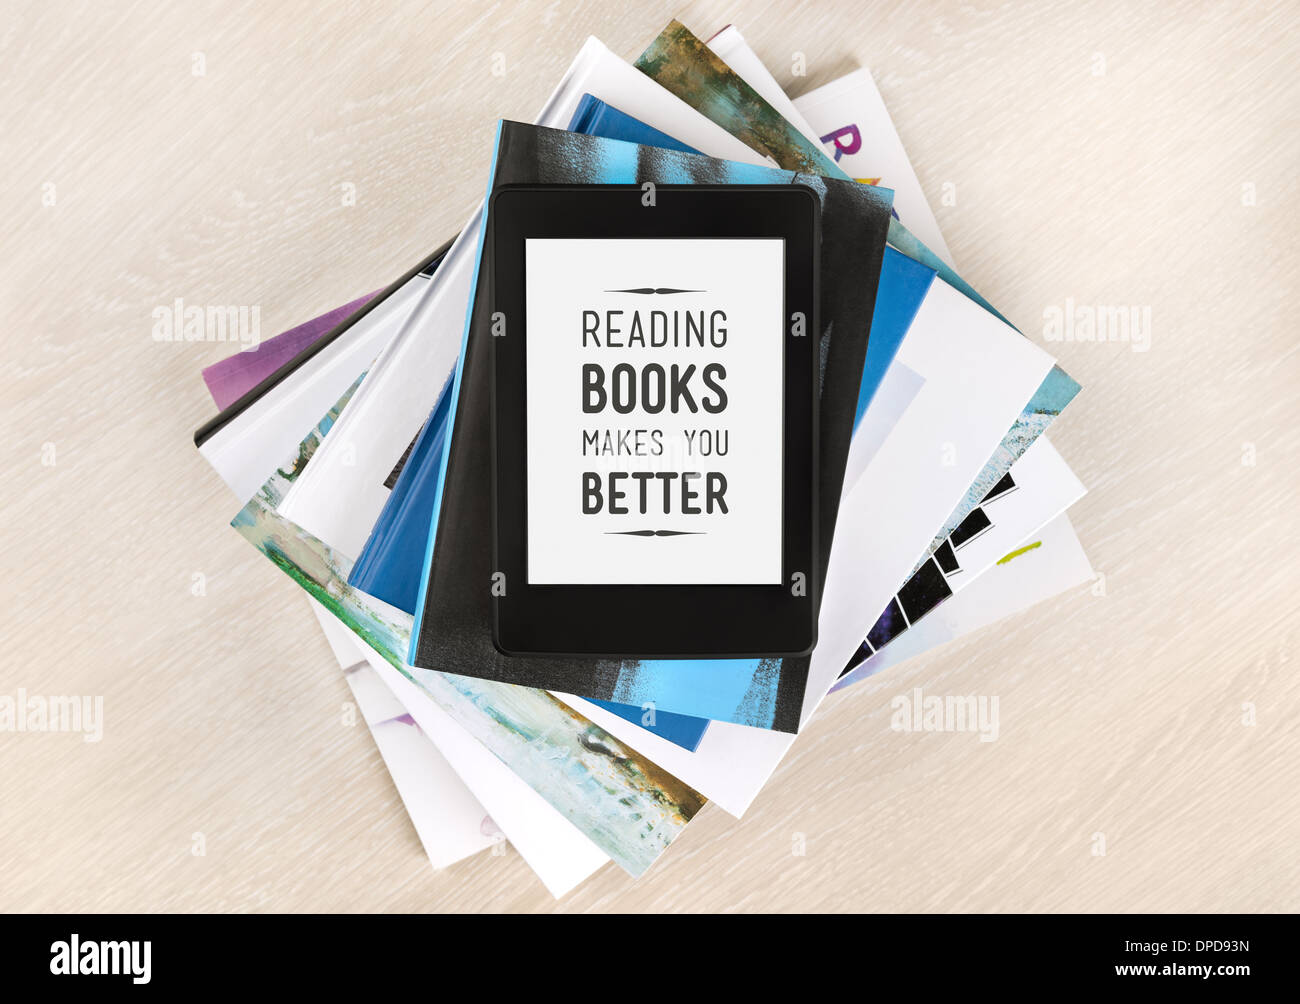 Bücher lesen macht Sie besser - Text auf einem Bildschirm des elektronischen Buches liegt oben auf einem Stapel von Büchern und Zeitschriften Stockfoto